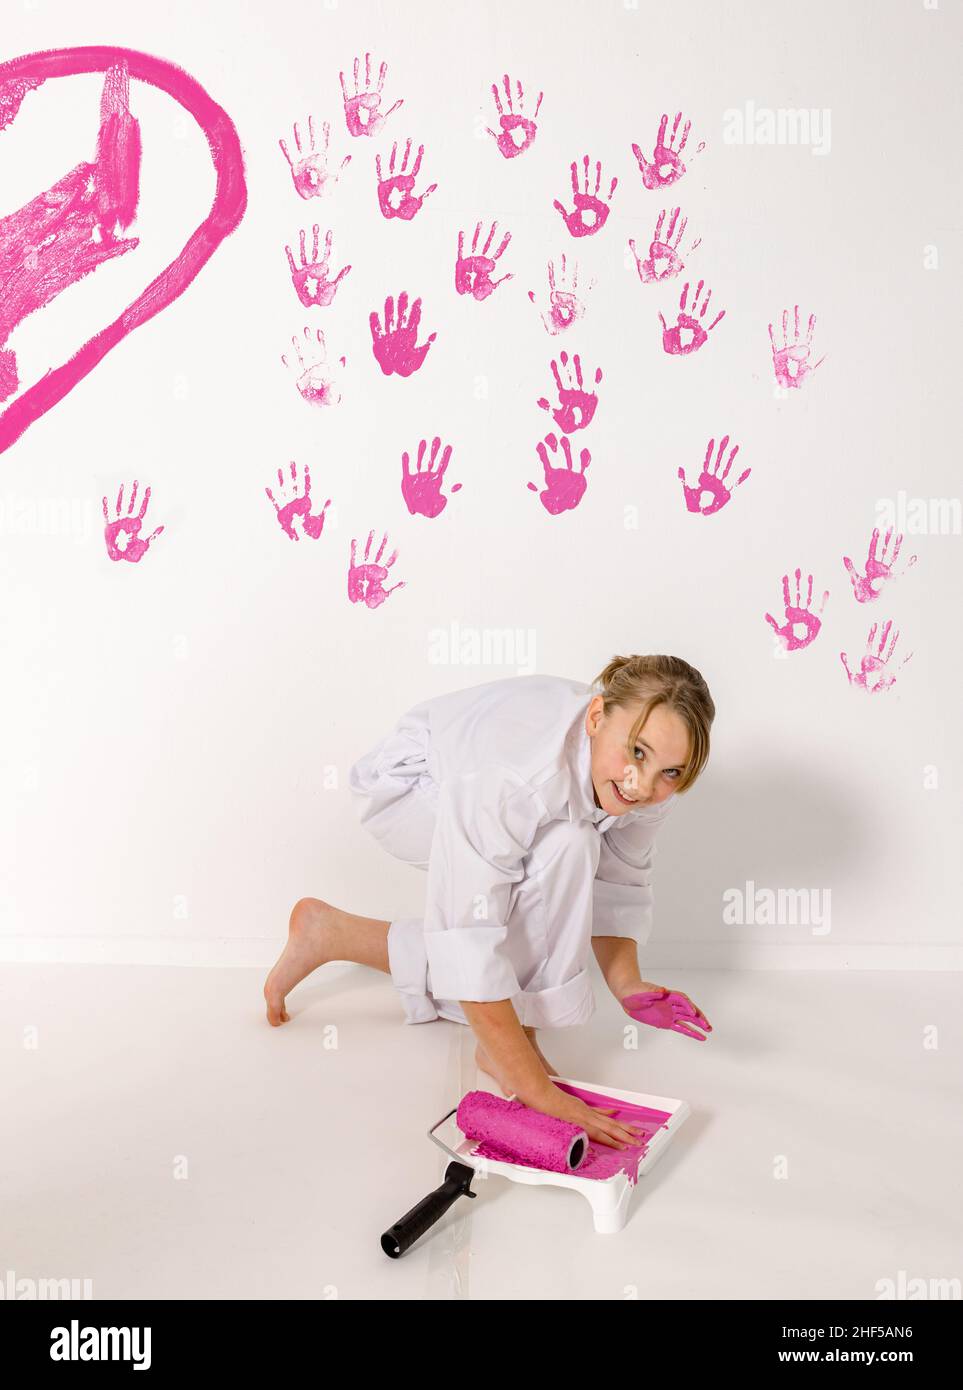 niña de 10 años pintando con sus manos sobre una pared blanca. La pinta es rosa y la pared es blanca. La chica tiene una expresión feliz mirando en la cámara. Foto de stock